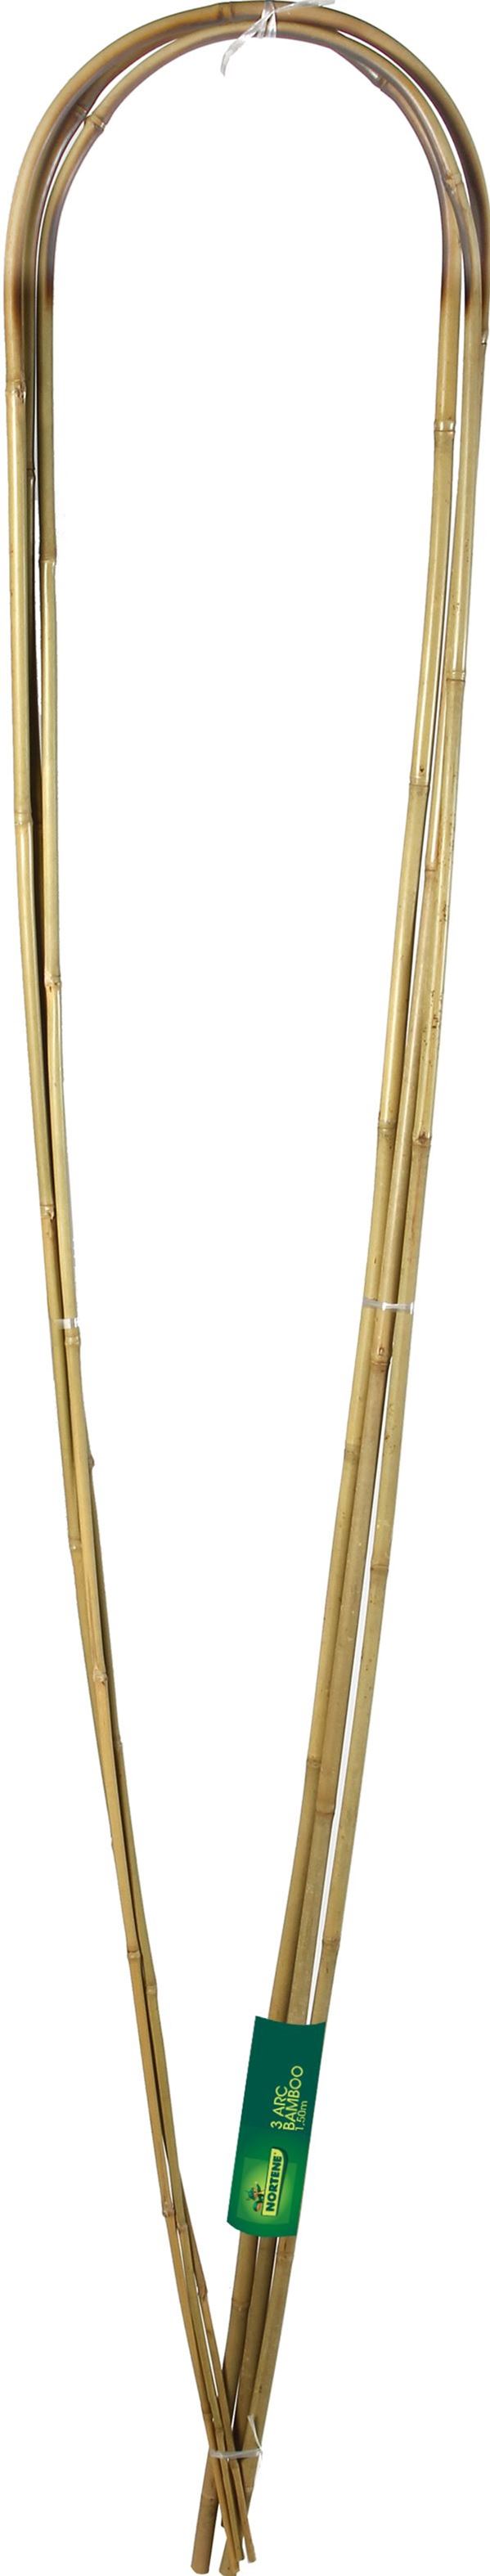 3 Tuteurs arceaux bambou naturel 1,50m